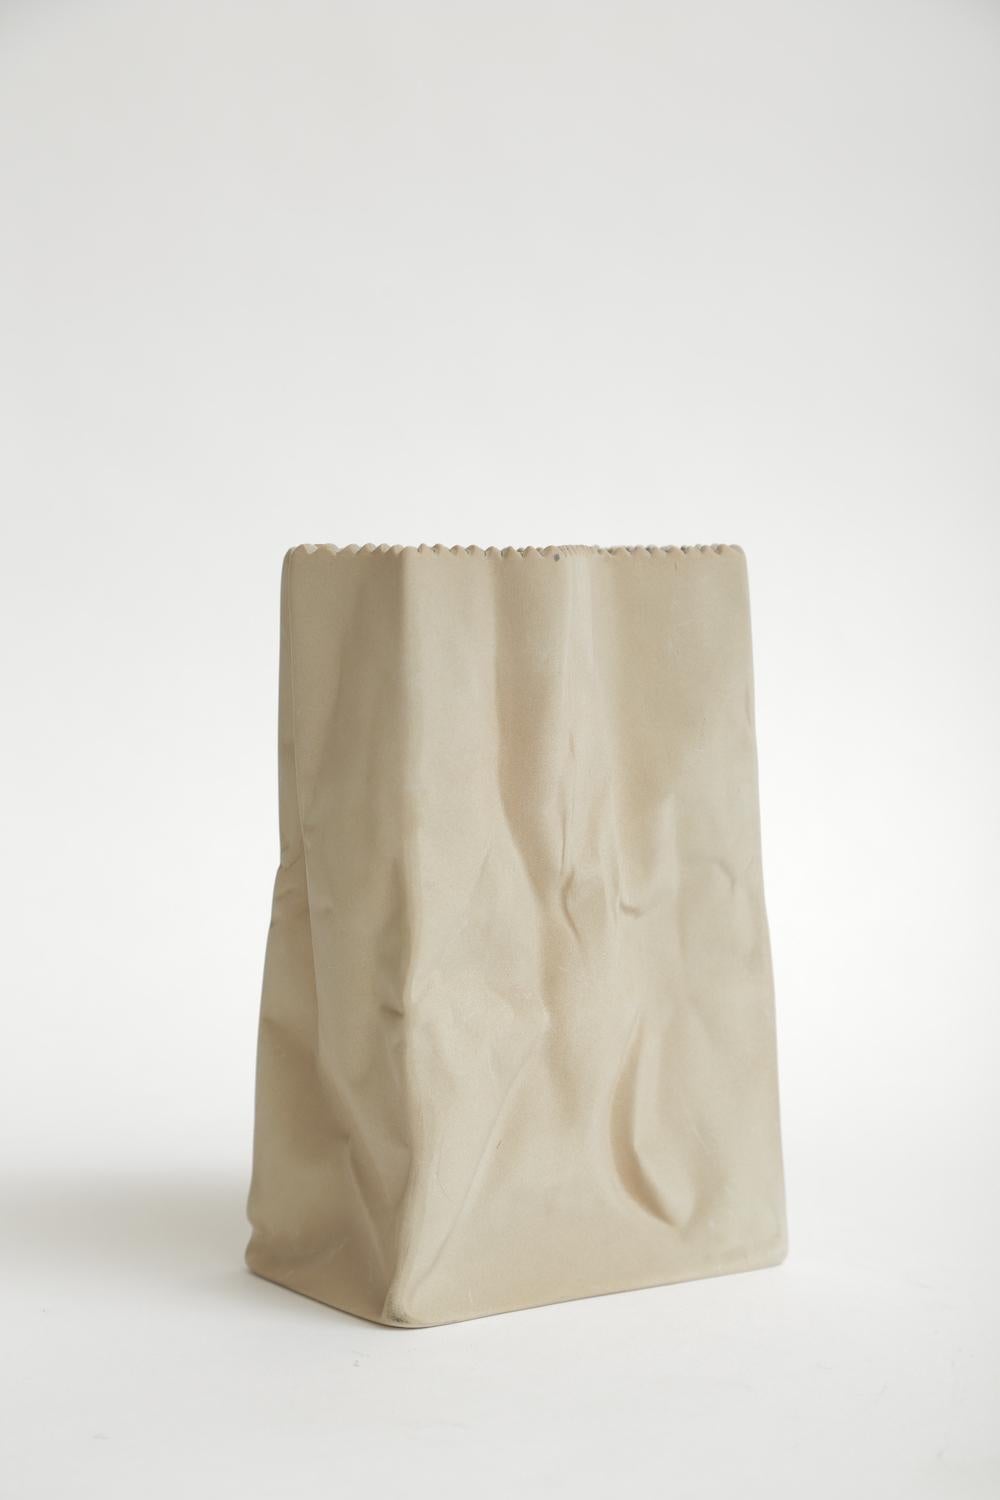 Modern Rosenthal Vintage Crushed Porcelain Brown Paper Bag Sculpture